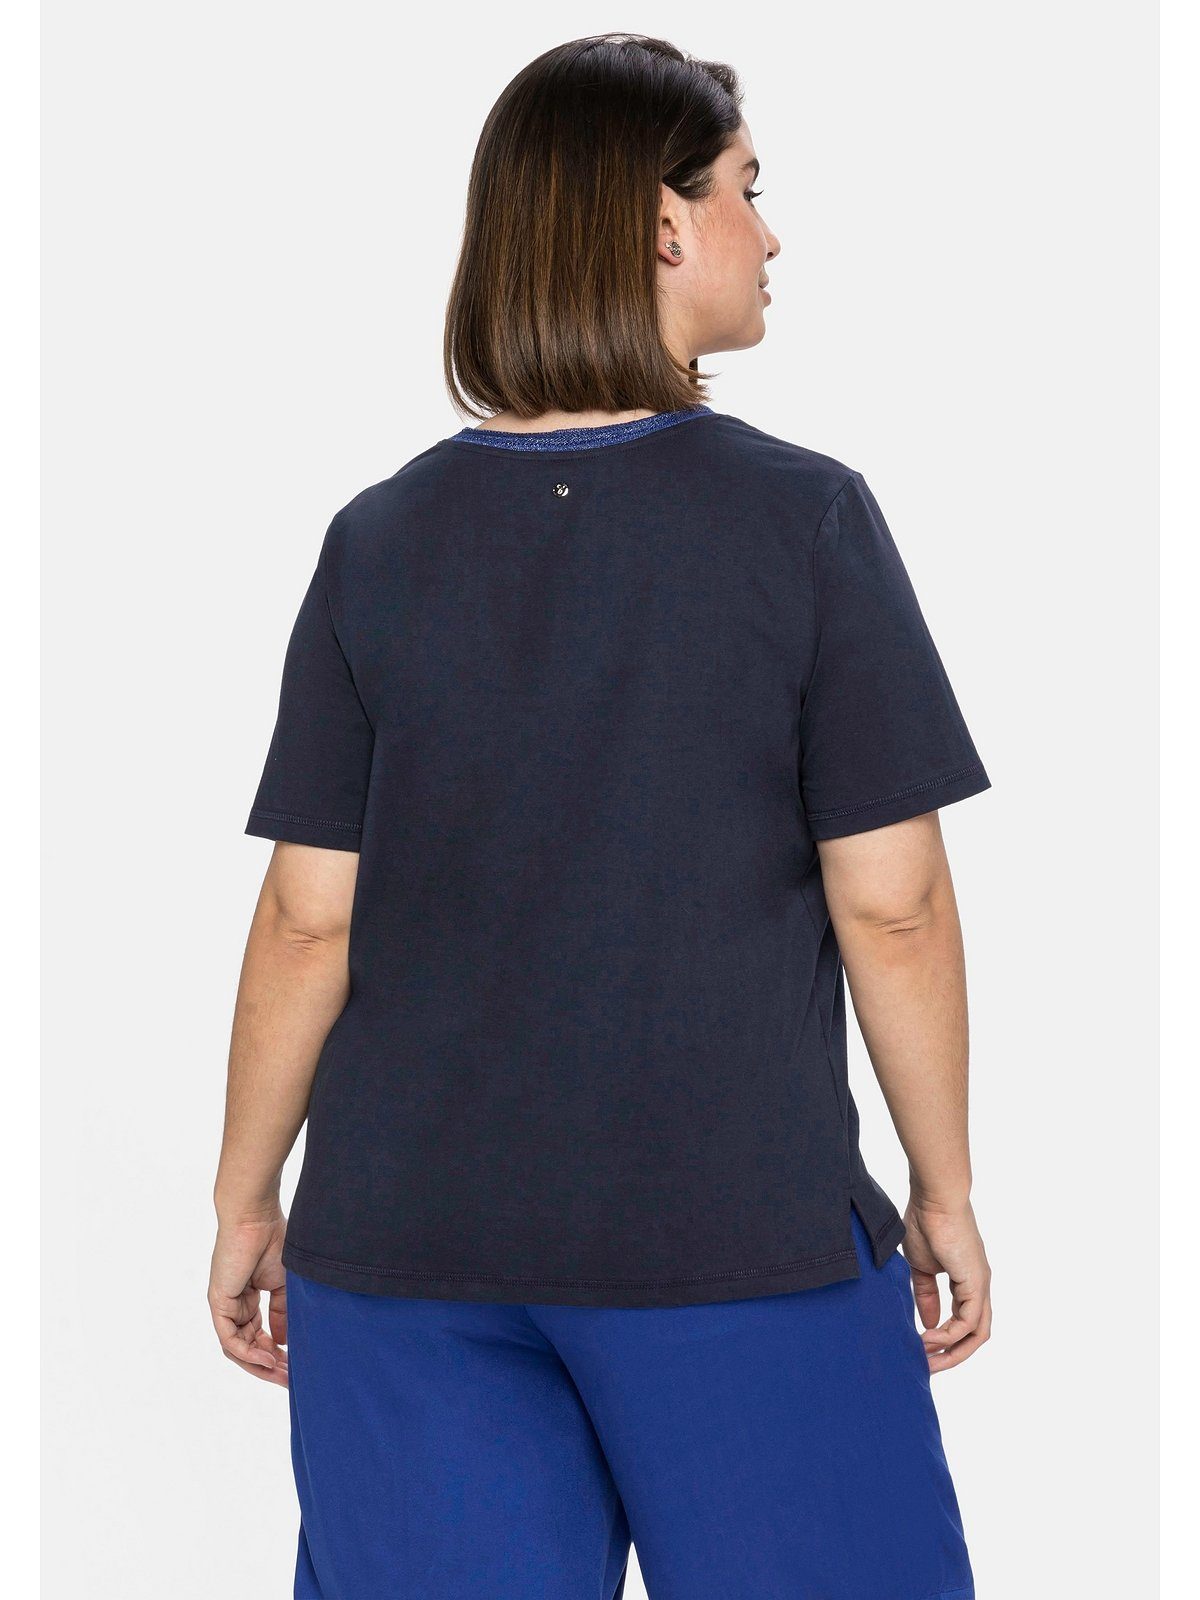 Sheego T-Shirt Große Größen mit Ausschnitt nachtblau Effektgarn Frontdruck und modischem am